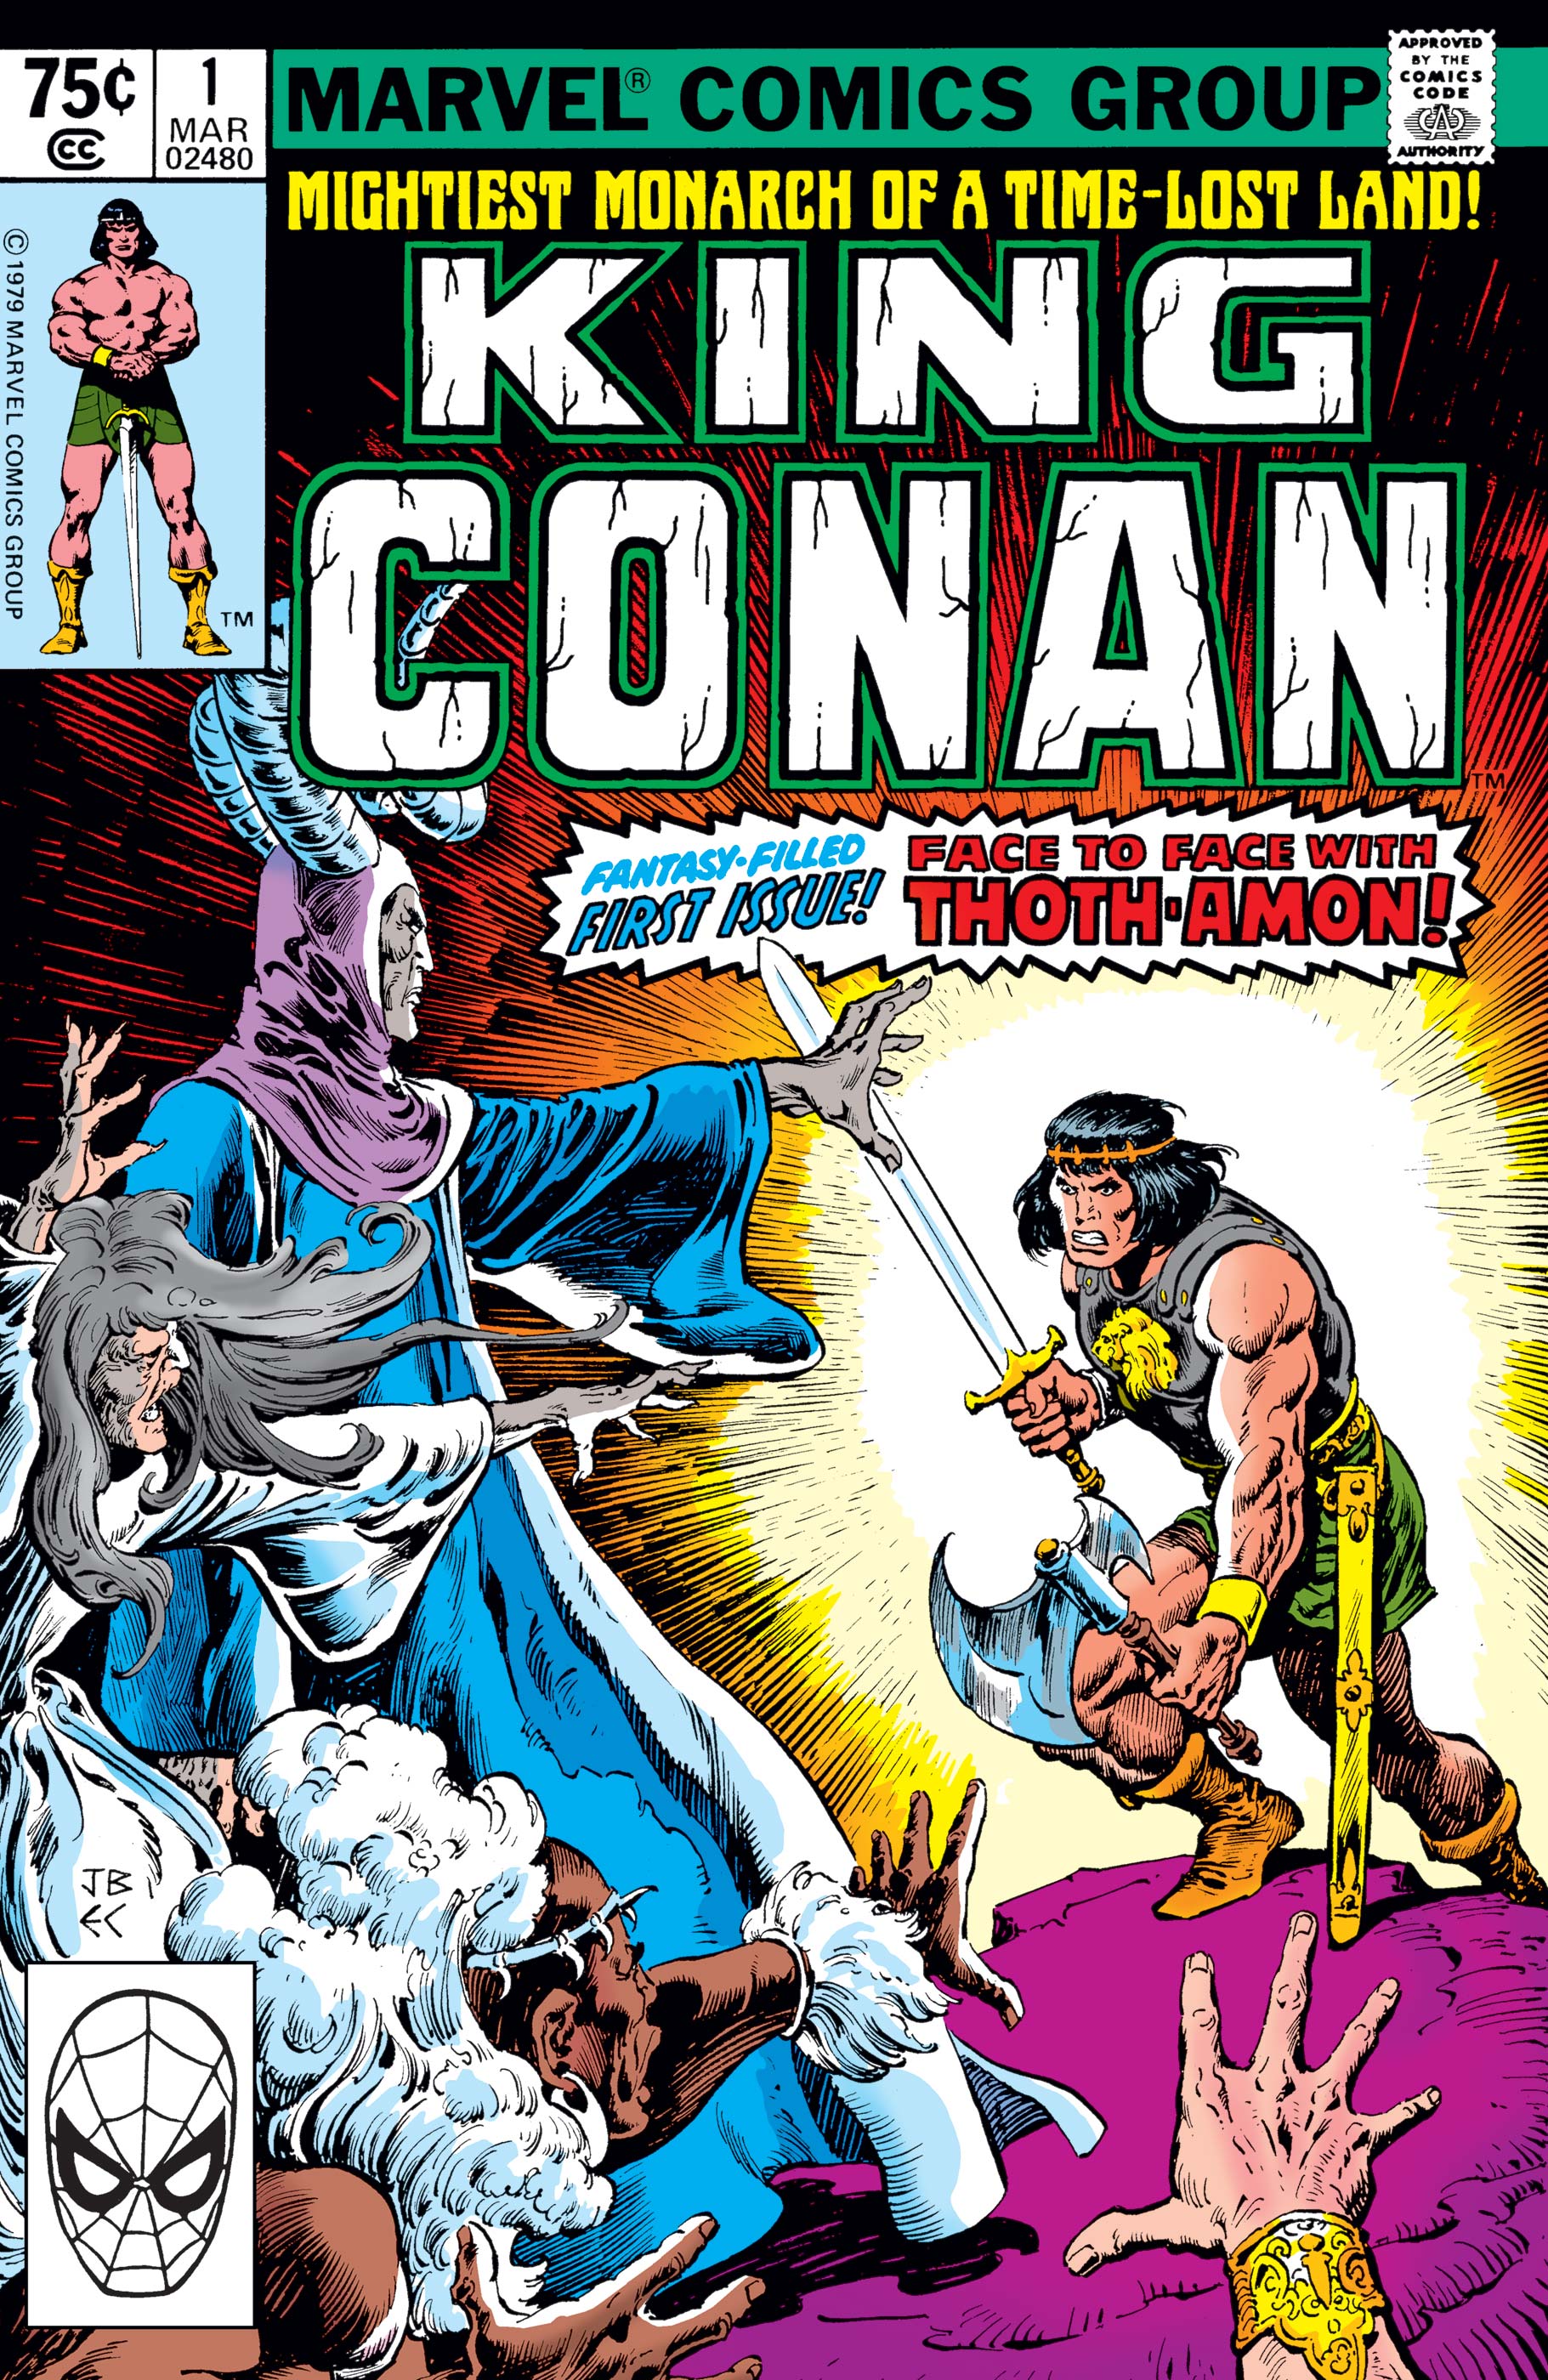 King Conan (1980) #1